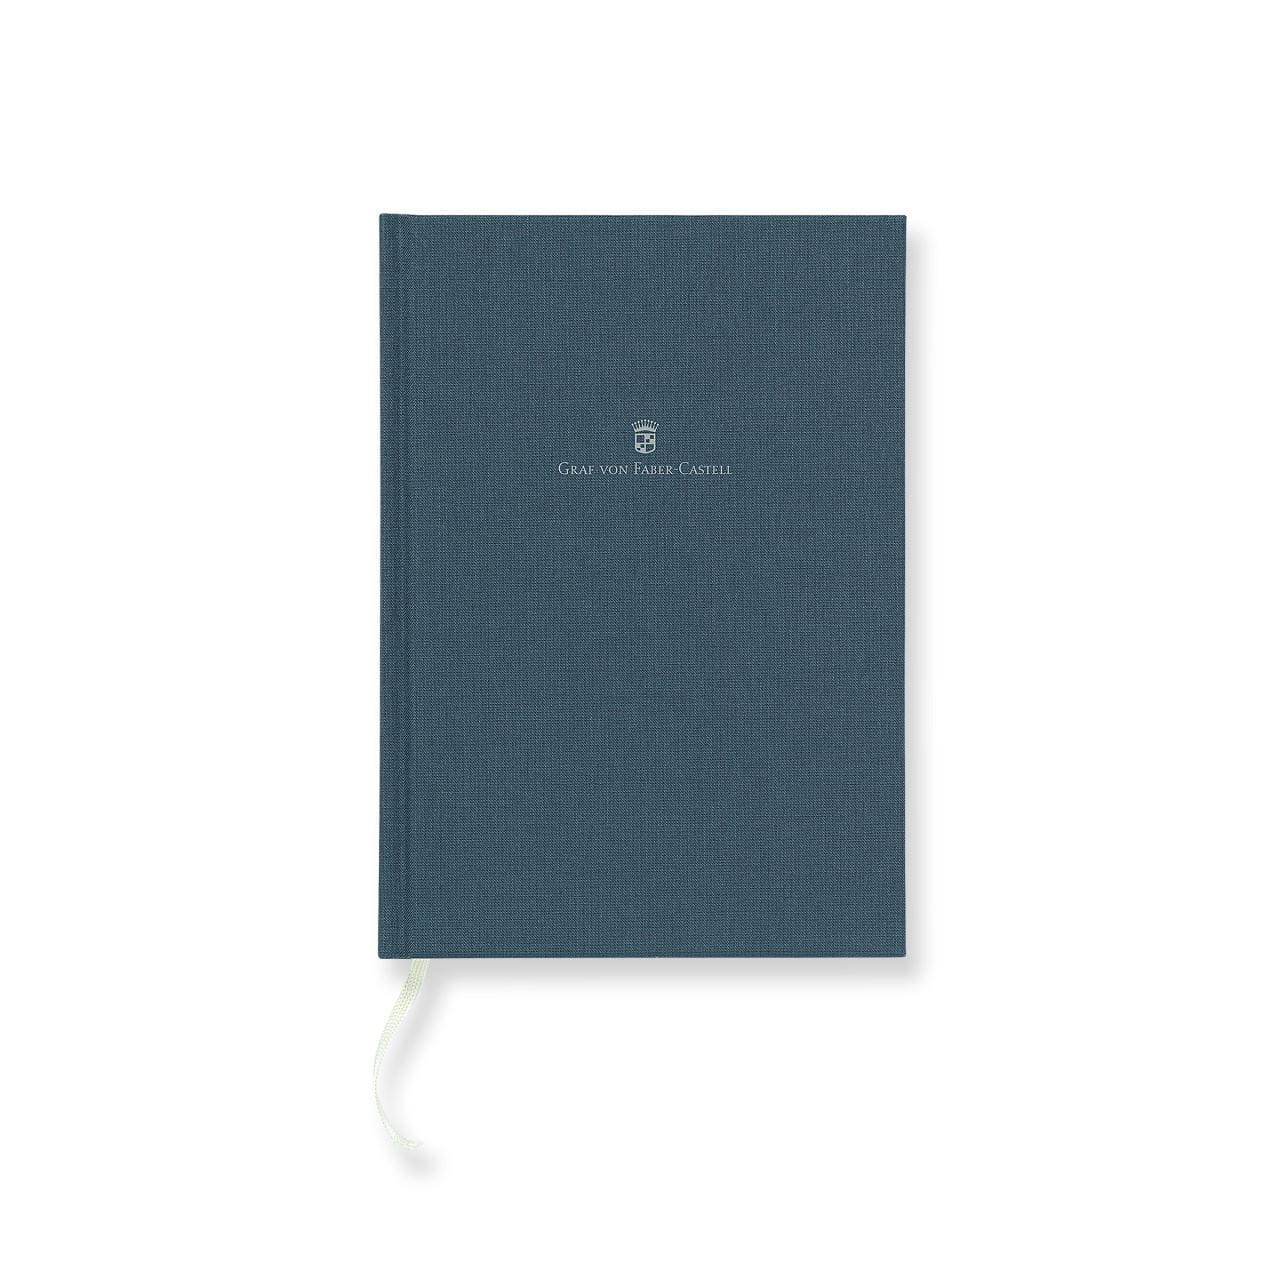 Graf-von-Faber-Castell - Book con copertina in lino formato A5, blu